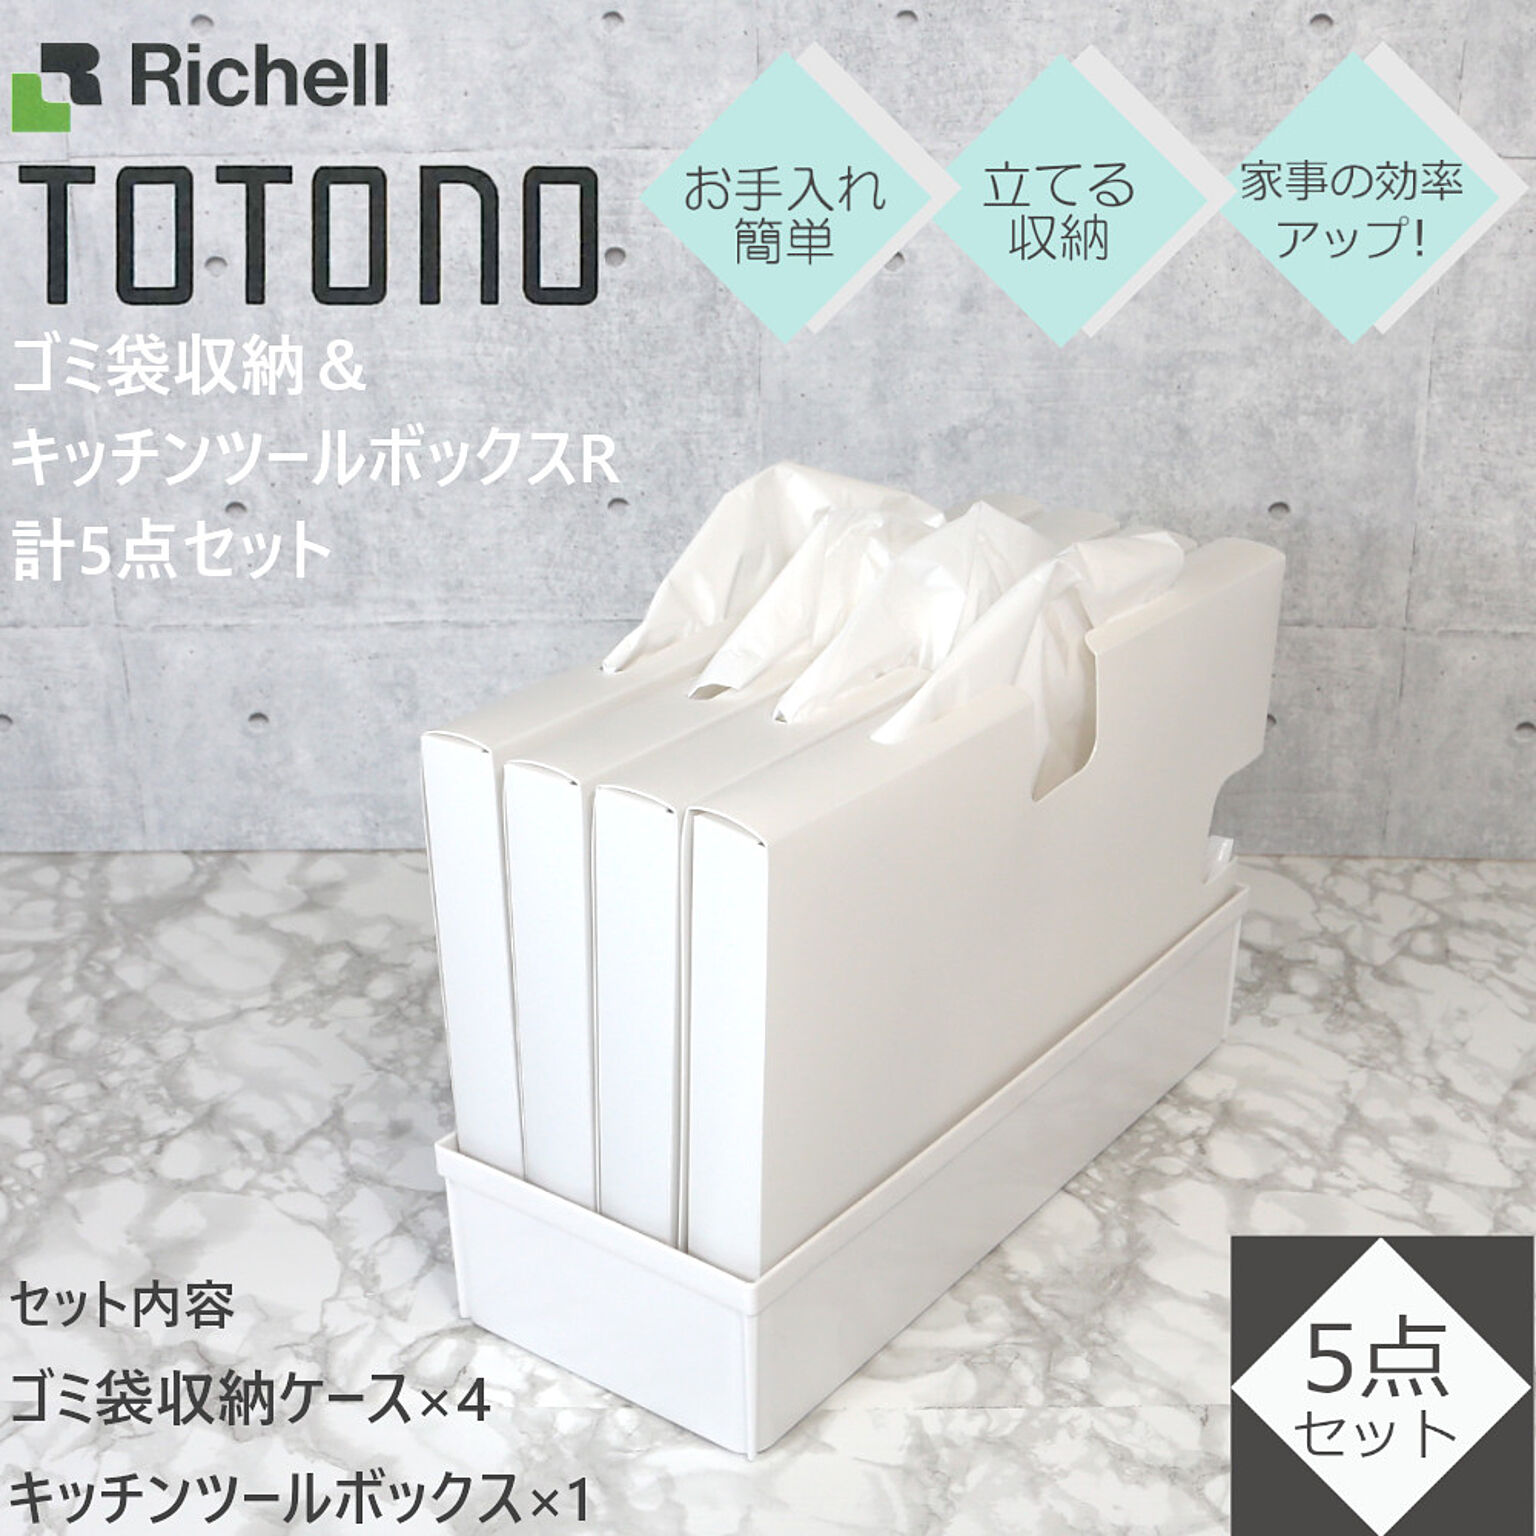 トトノ ゴミ袋 収納 ケース 計5点セット リッチェル キッチンツールボックス レギュラー×1 ゴミ袋収納 ×4